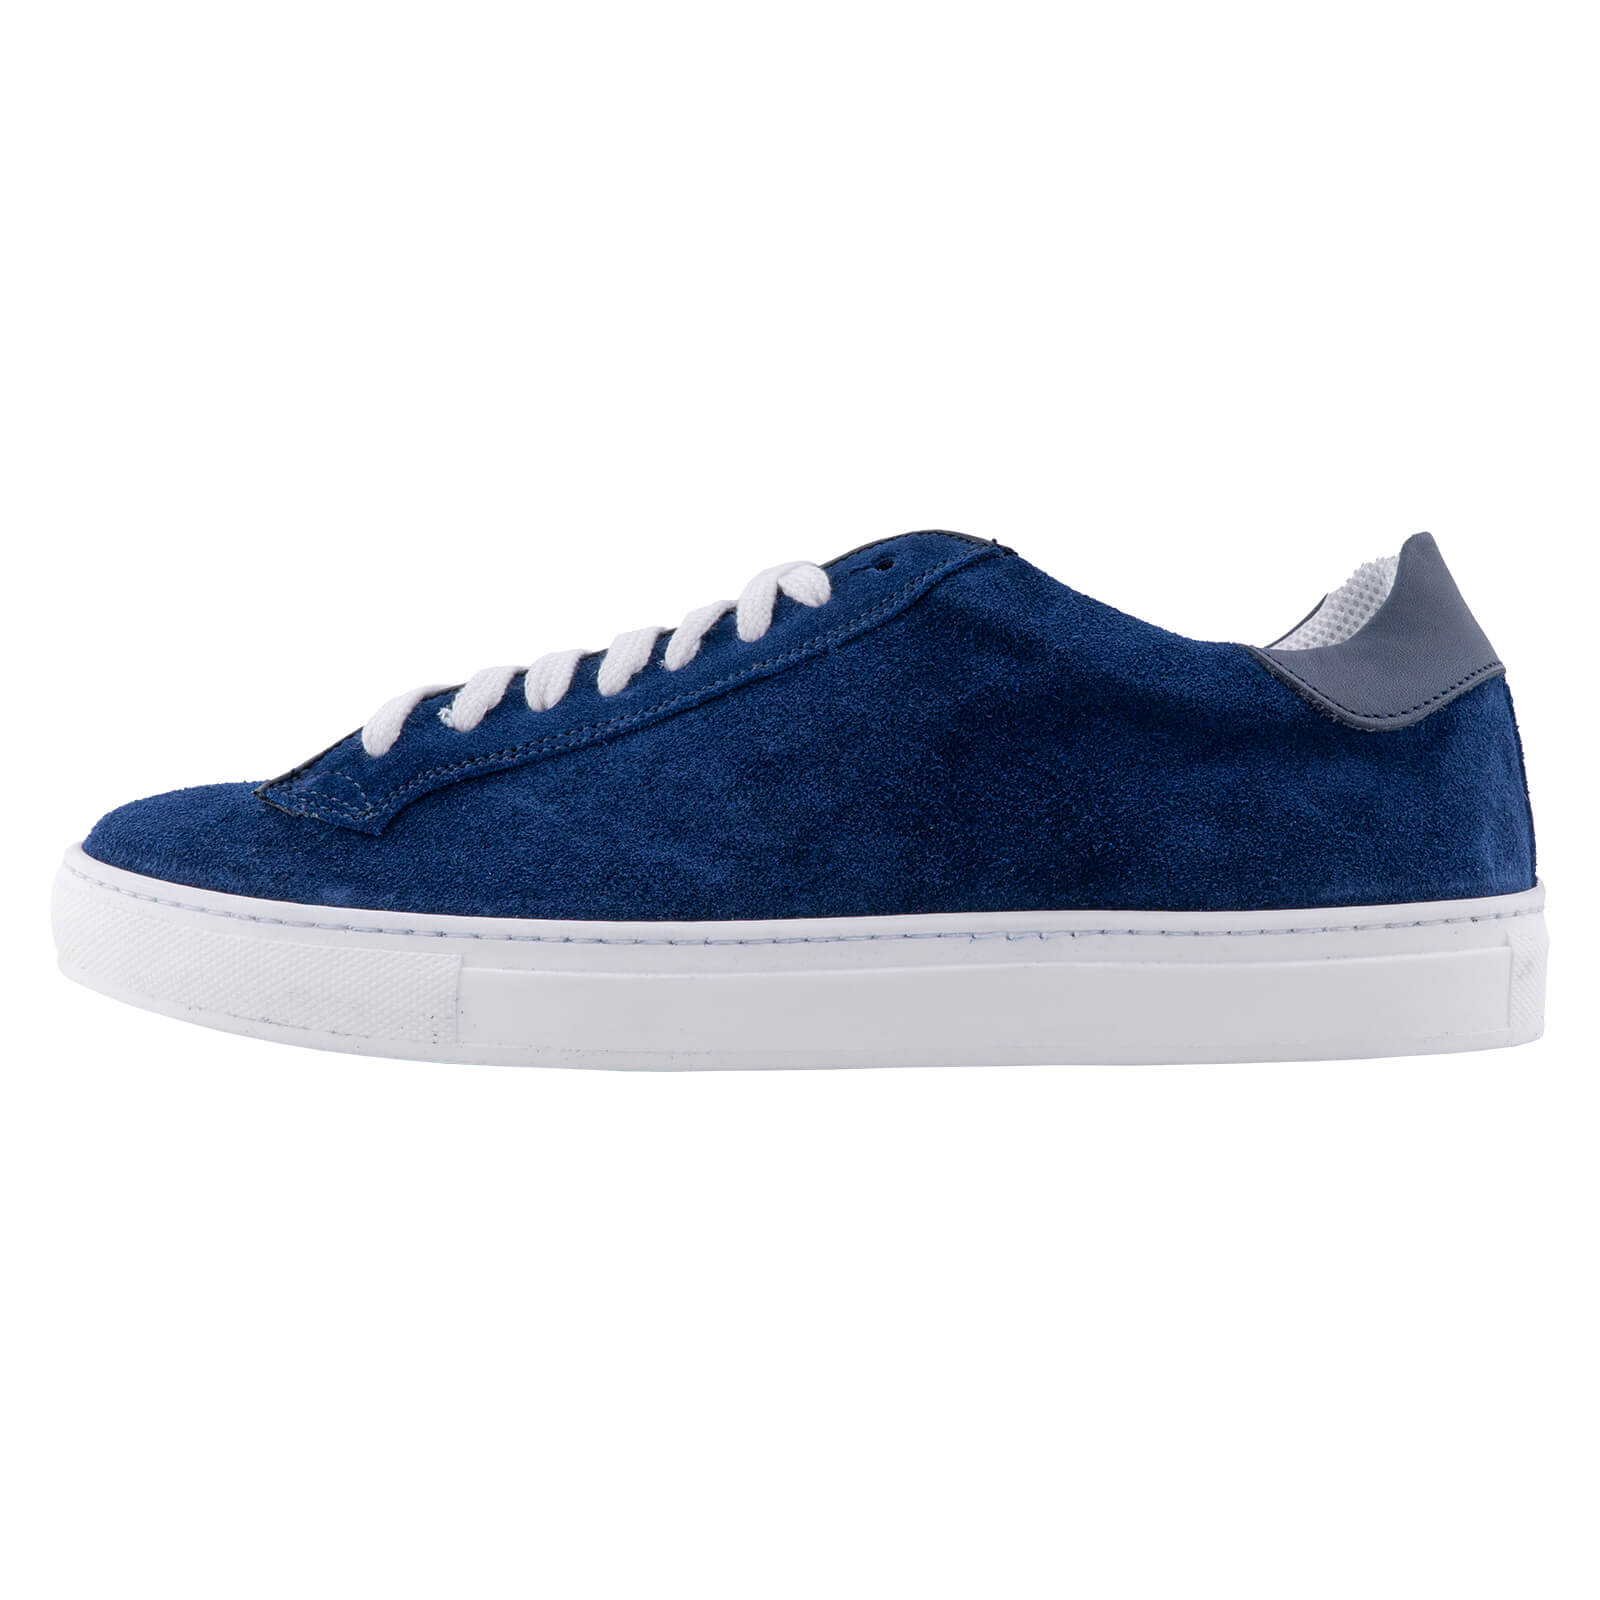 Low-top Μπλε Σουέντ Sneaker Μπλε